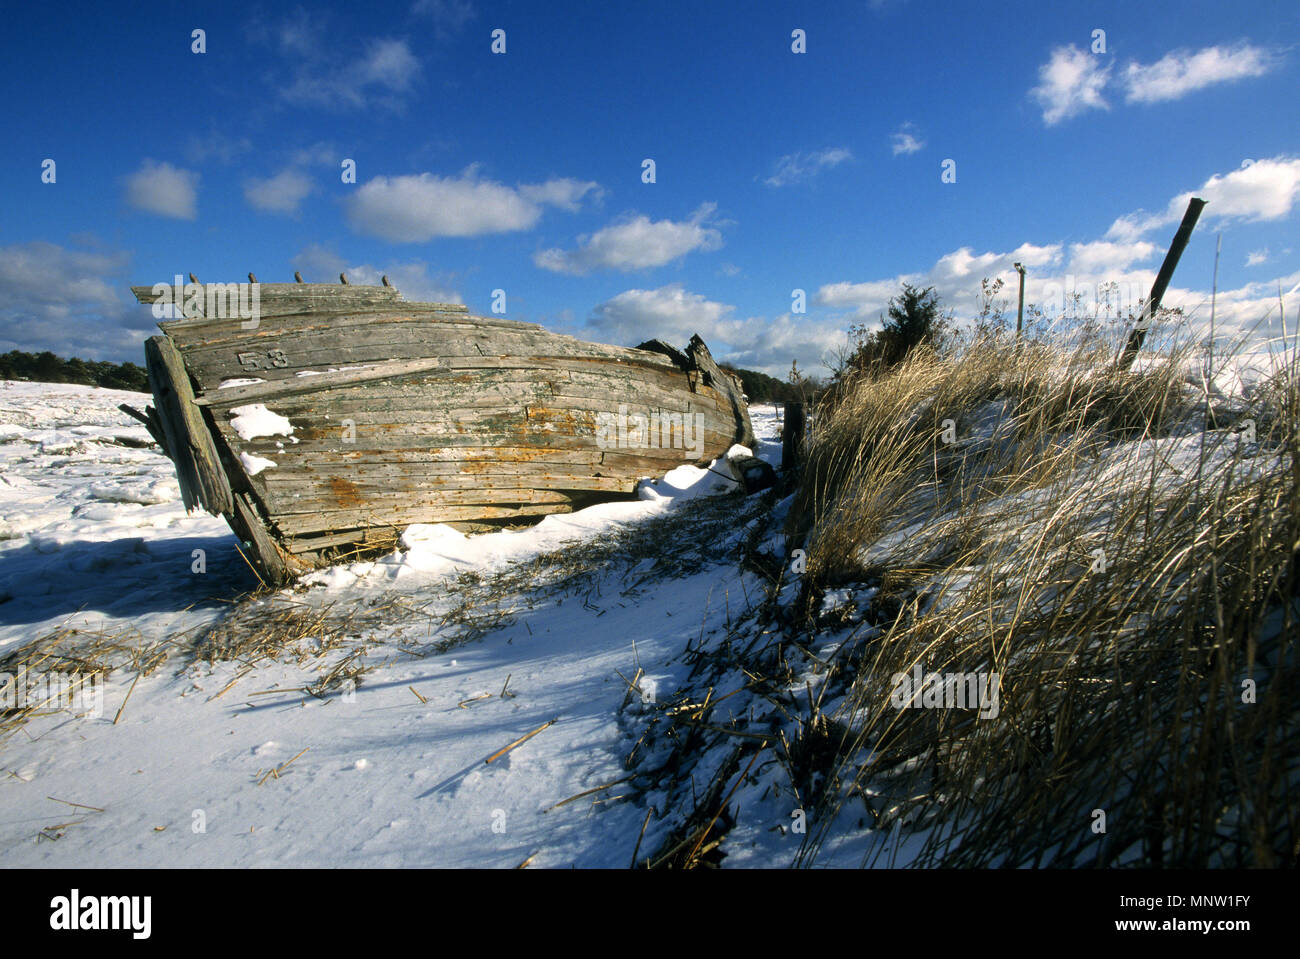 Un bateau abandonné dans un marais couvert de neige Wellfleet sur Cape Cod, USA Banque D'Images